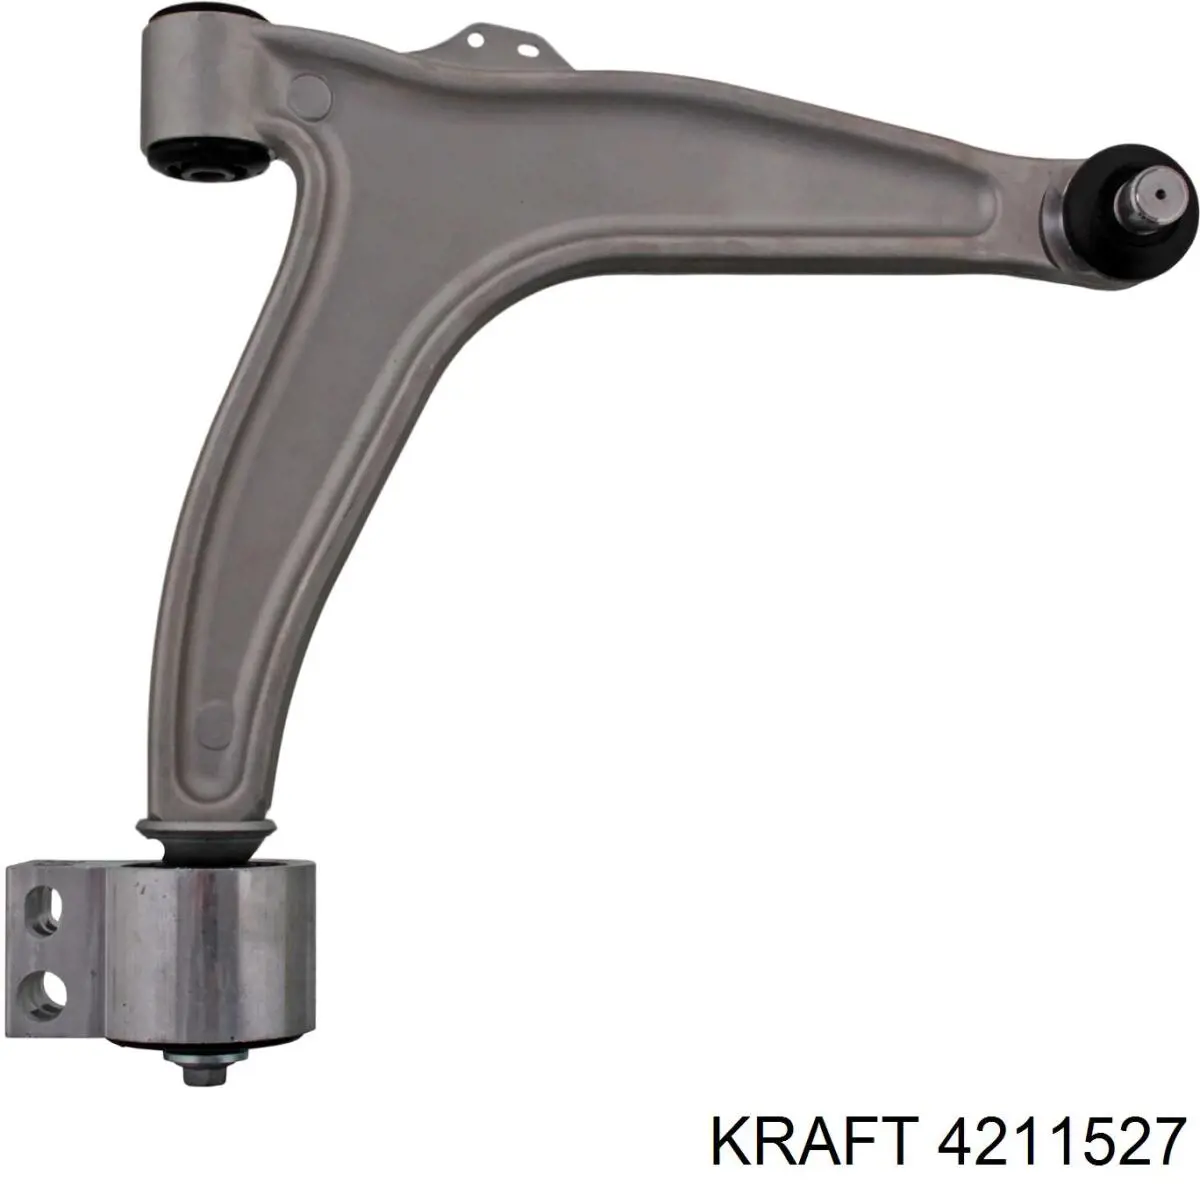 4211527 Kraft рычаг передней подвески нижний правый